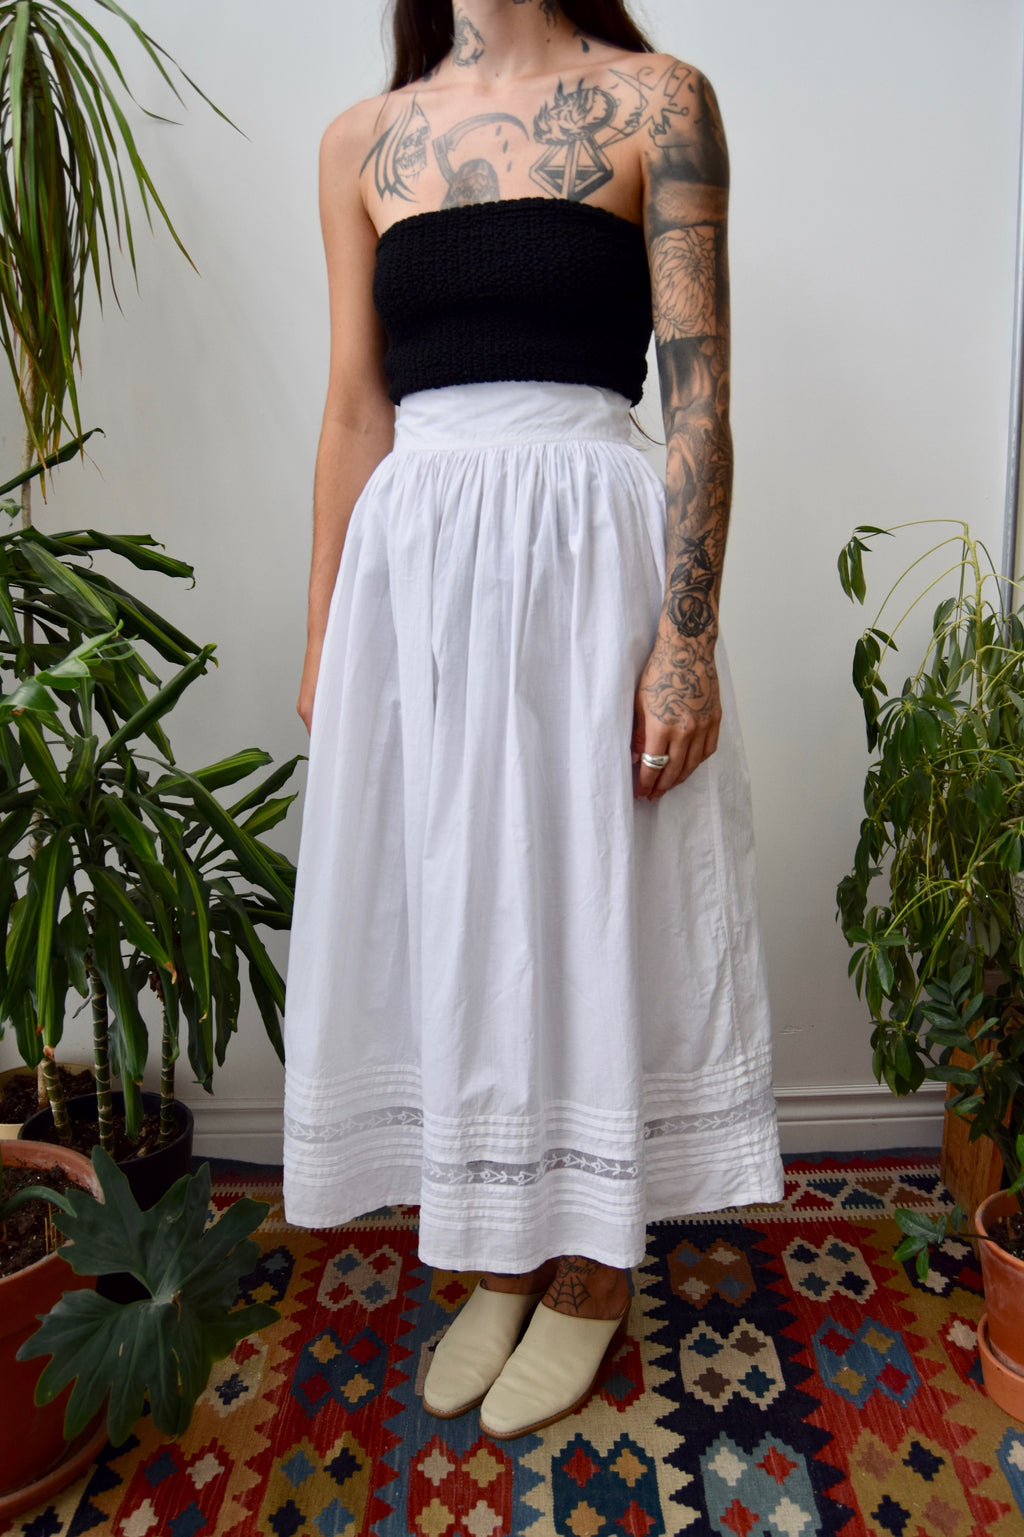 Eighties Cotton Petticoat Skirt